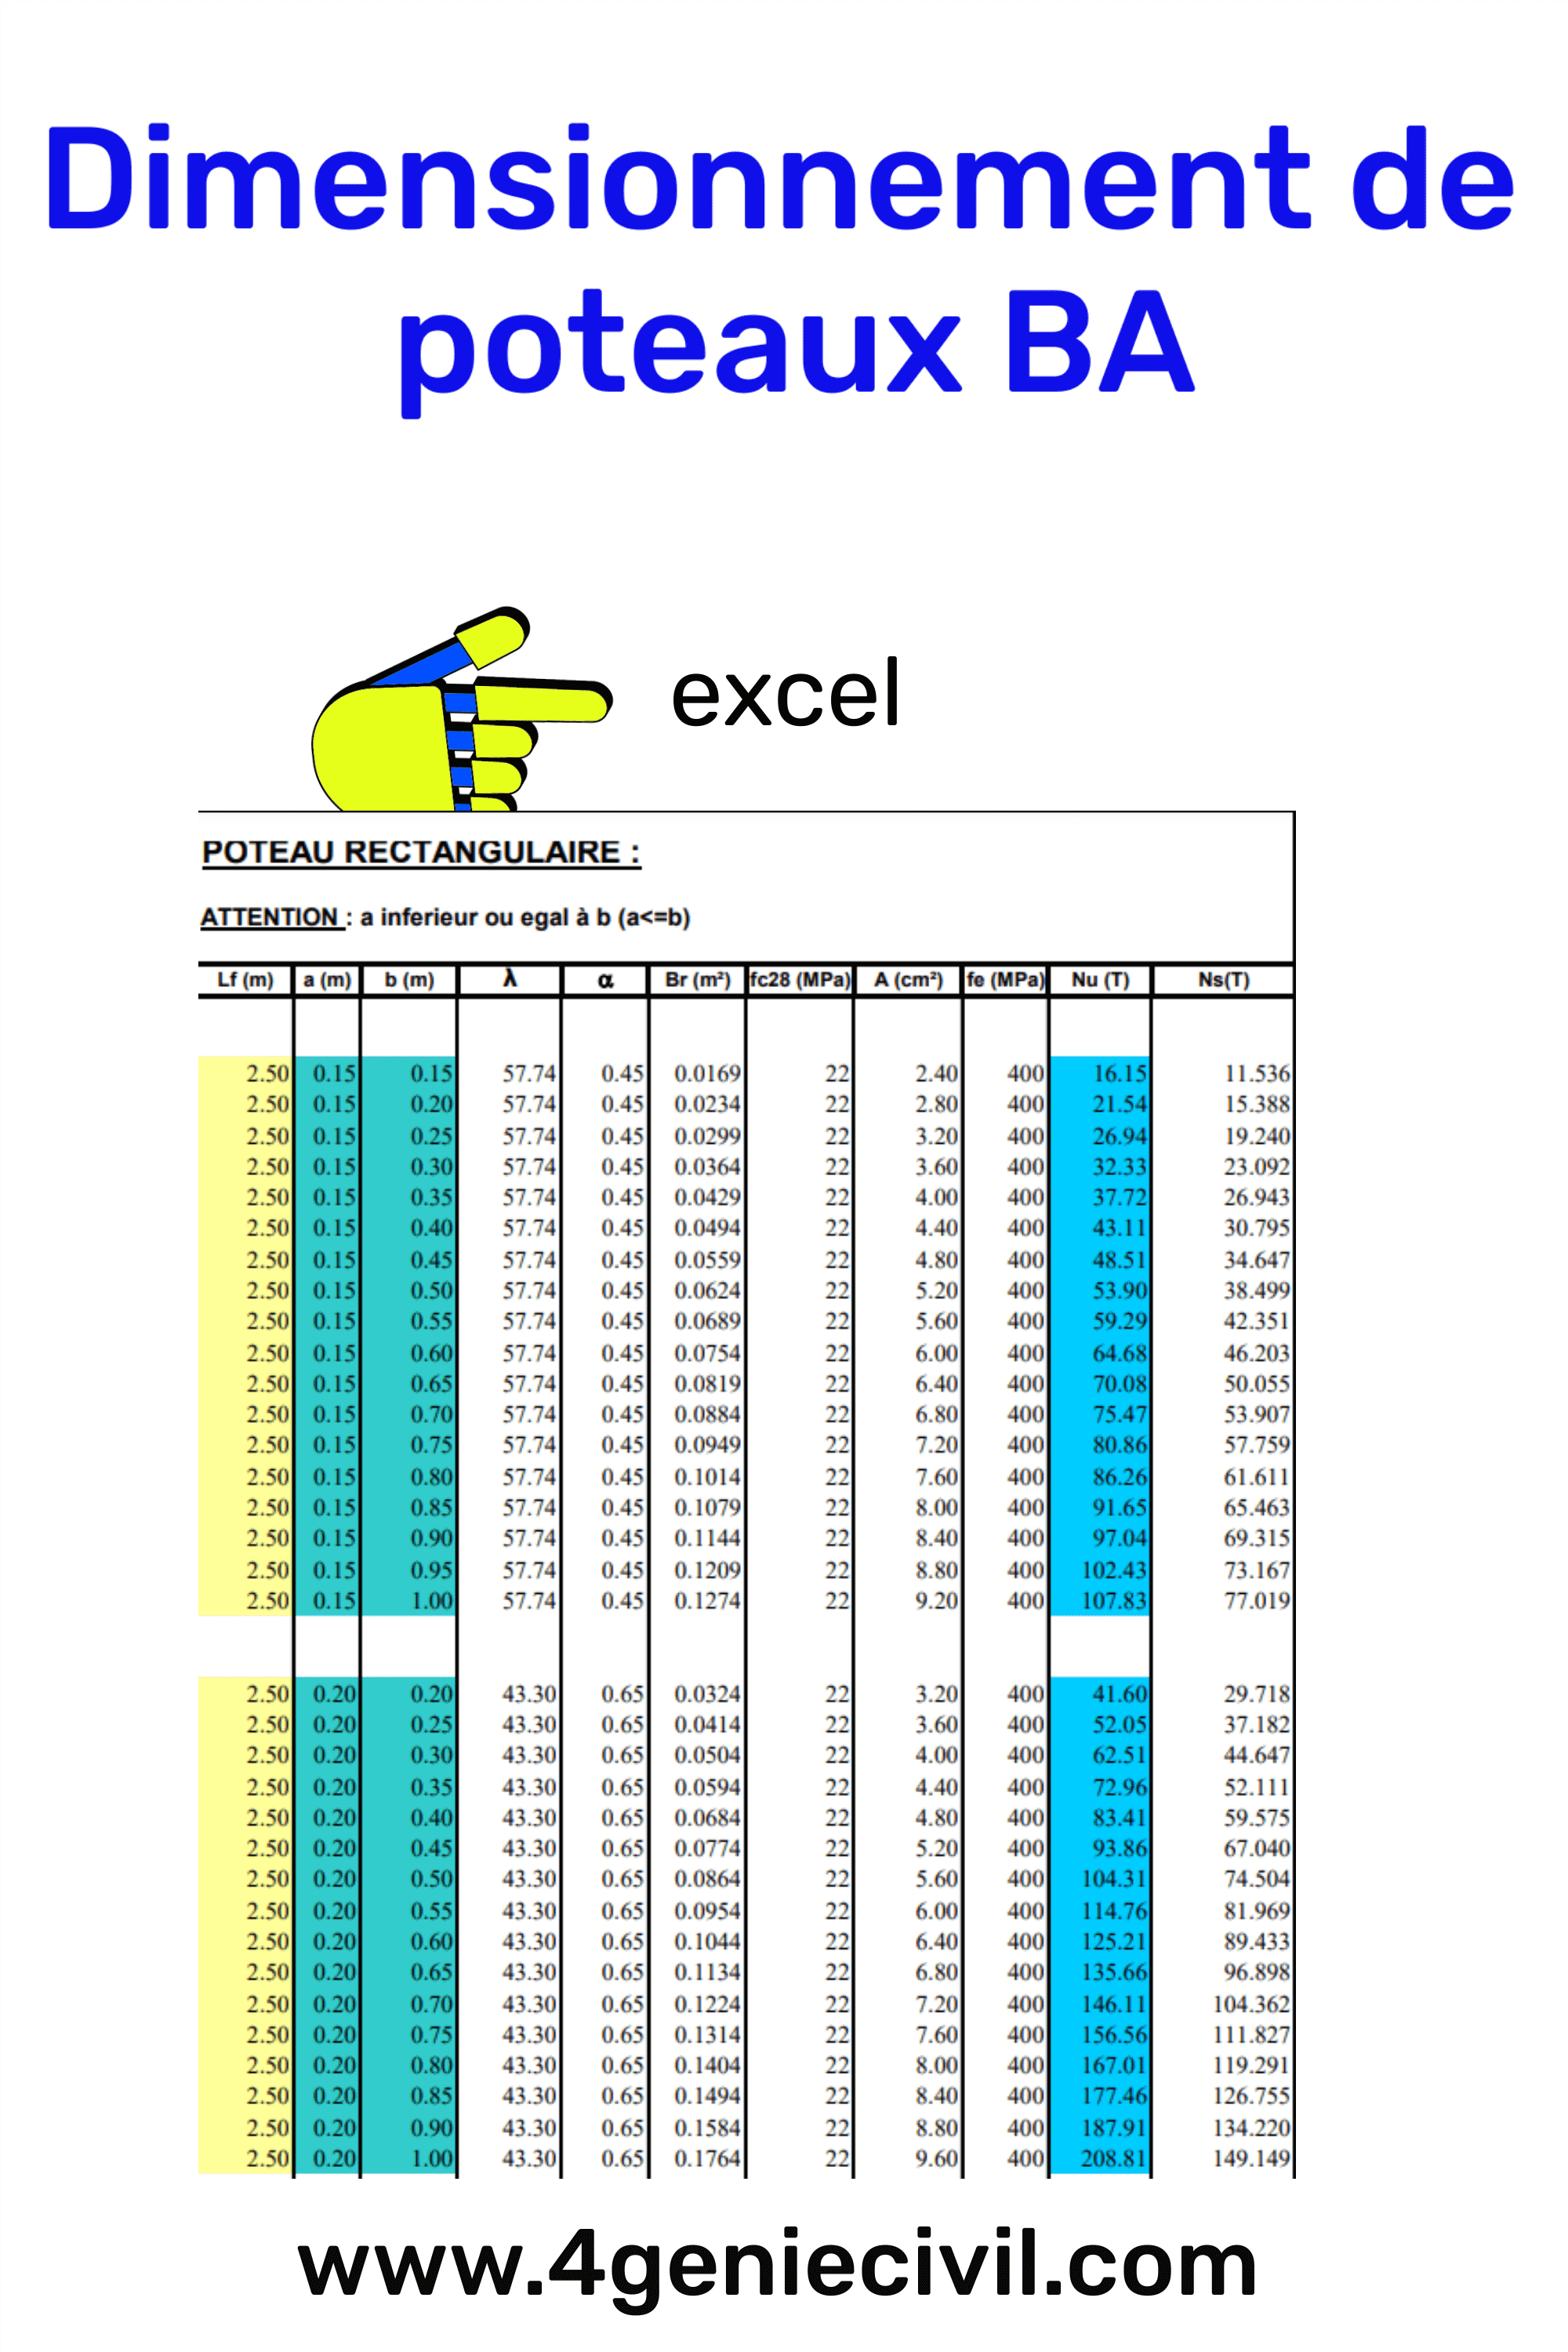 Excel contient des données sur les dimensions, les charges et les propriétés des matériaux pour vous aider à concevoir des poteaux solides et durables.